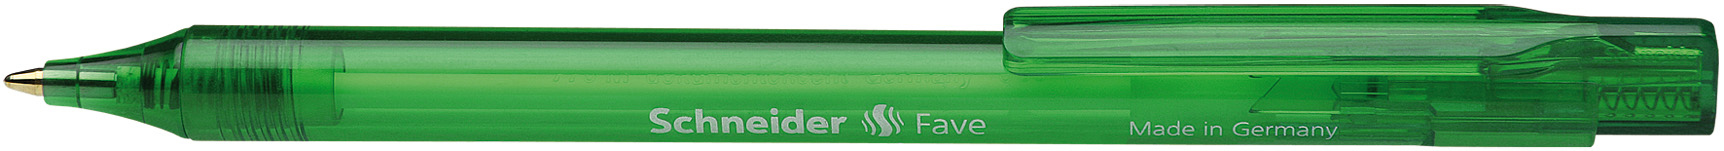 SCHNEIDER Stylo à bille Fave M 130404 vert